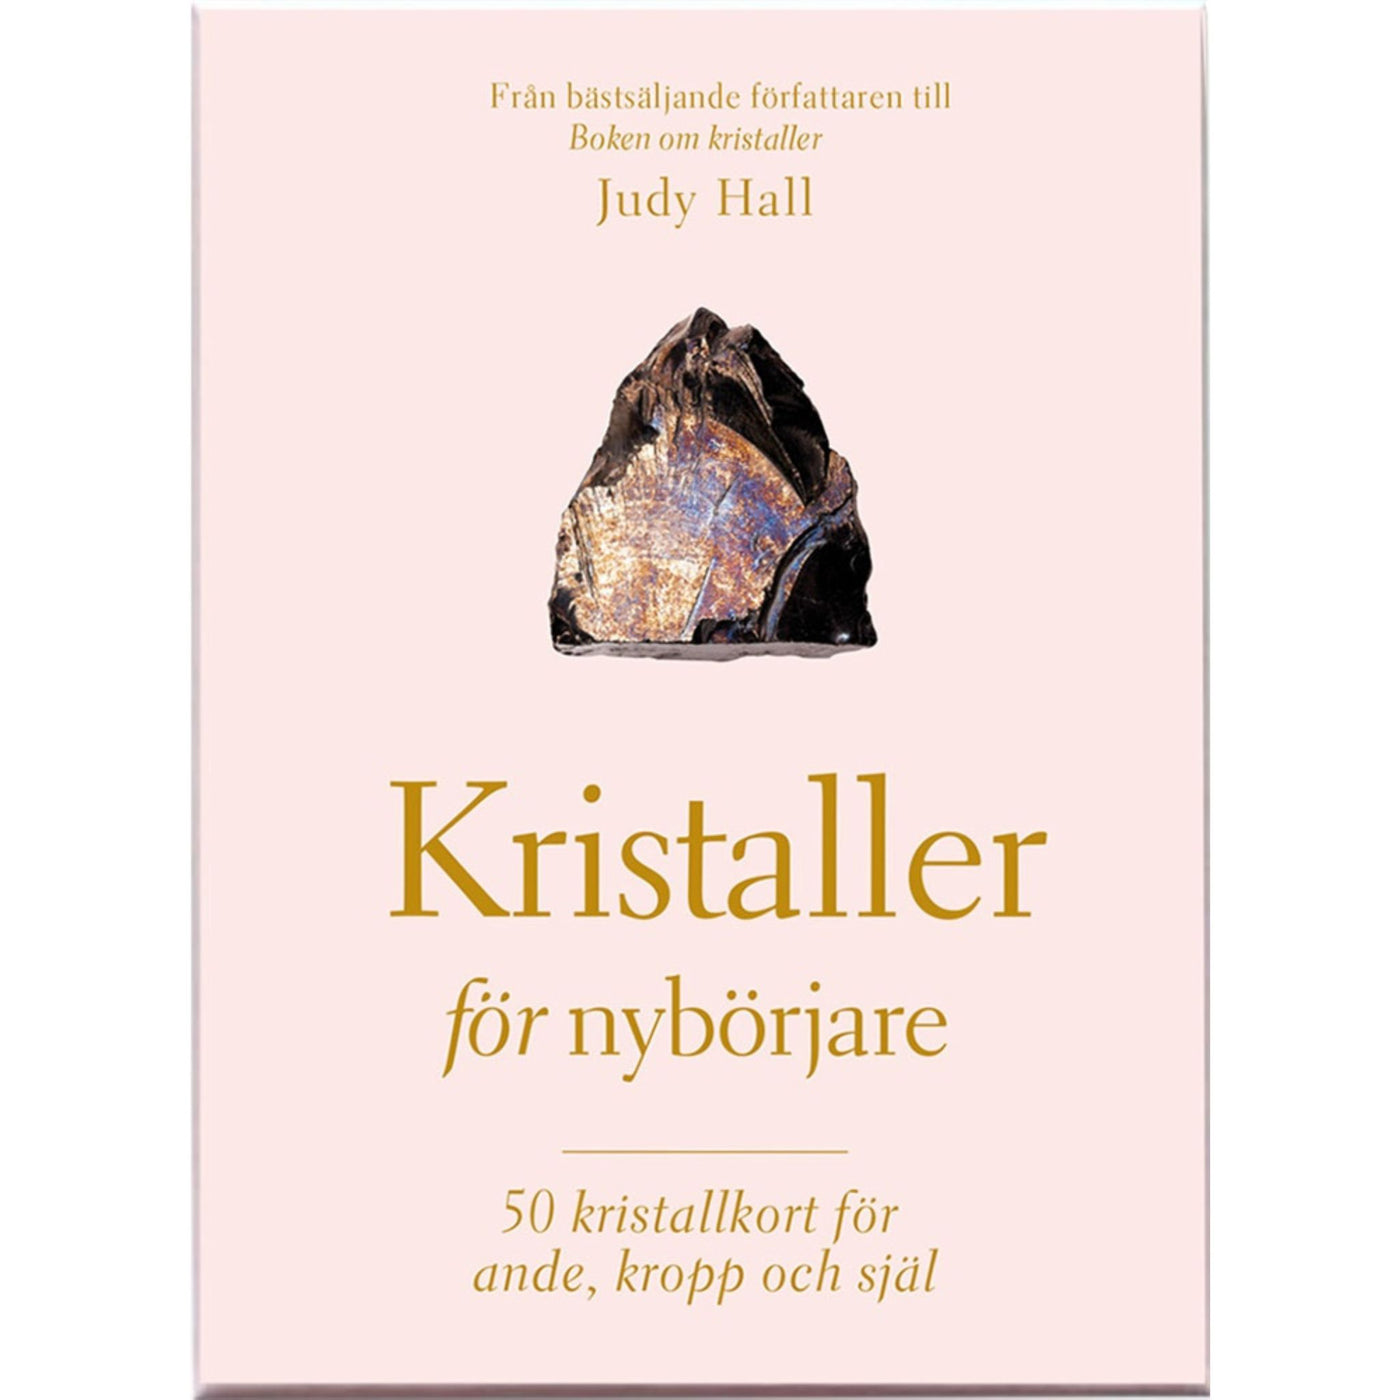 Kristaller för nybörjare - 50 kristallkort & guidebok